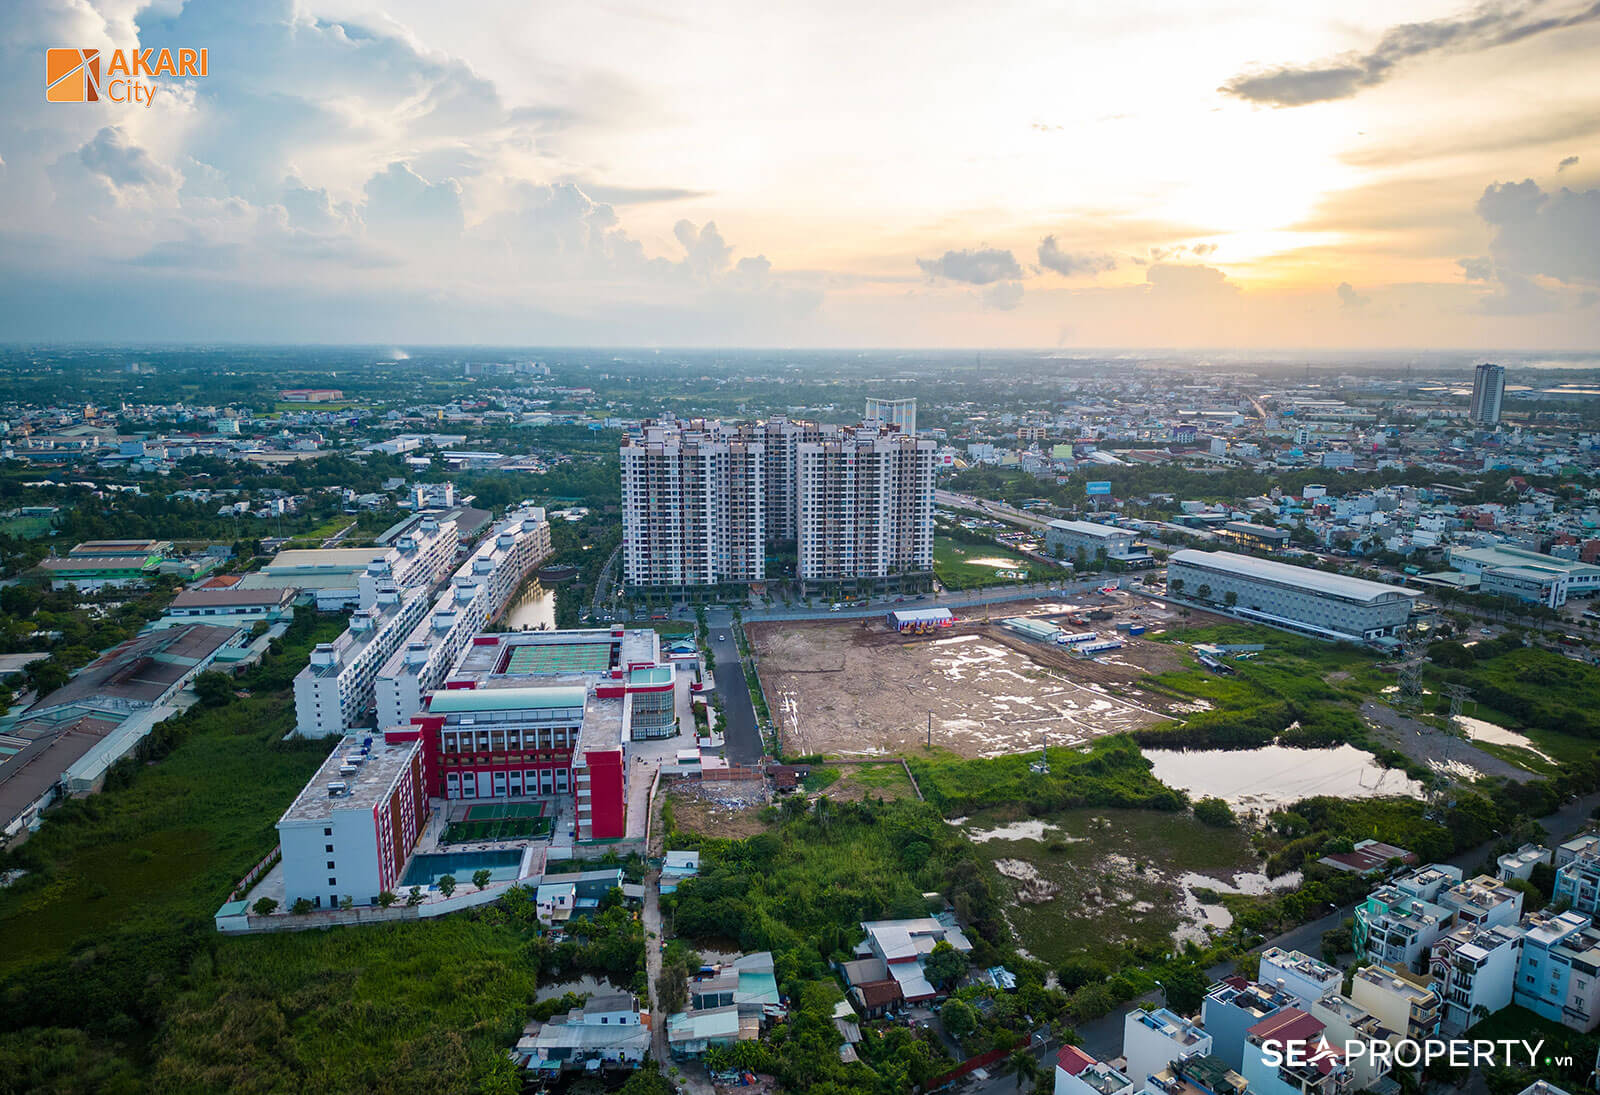 Dự án Akari City khu Tây Sài Gòn